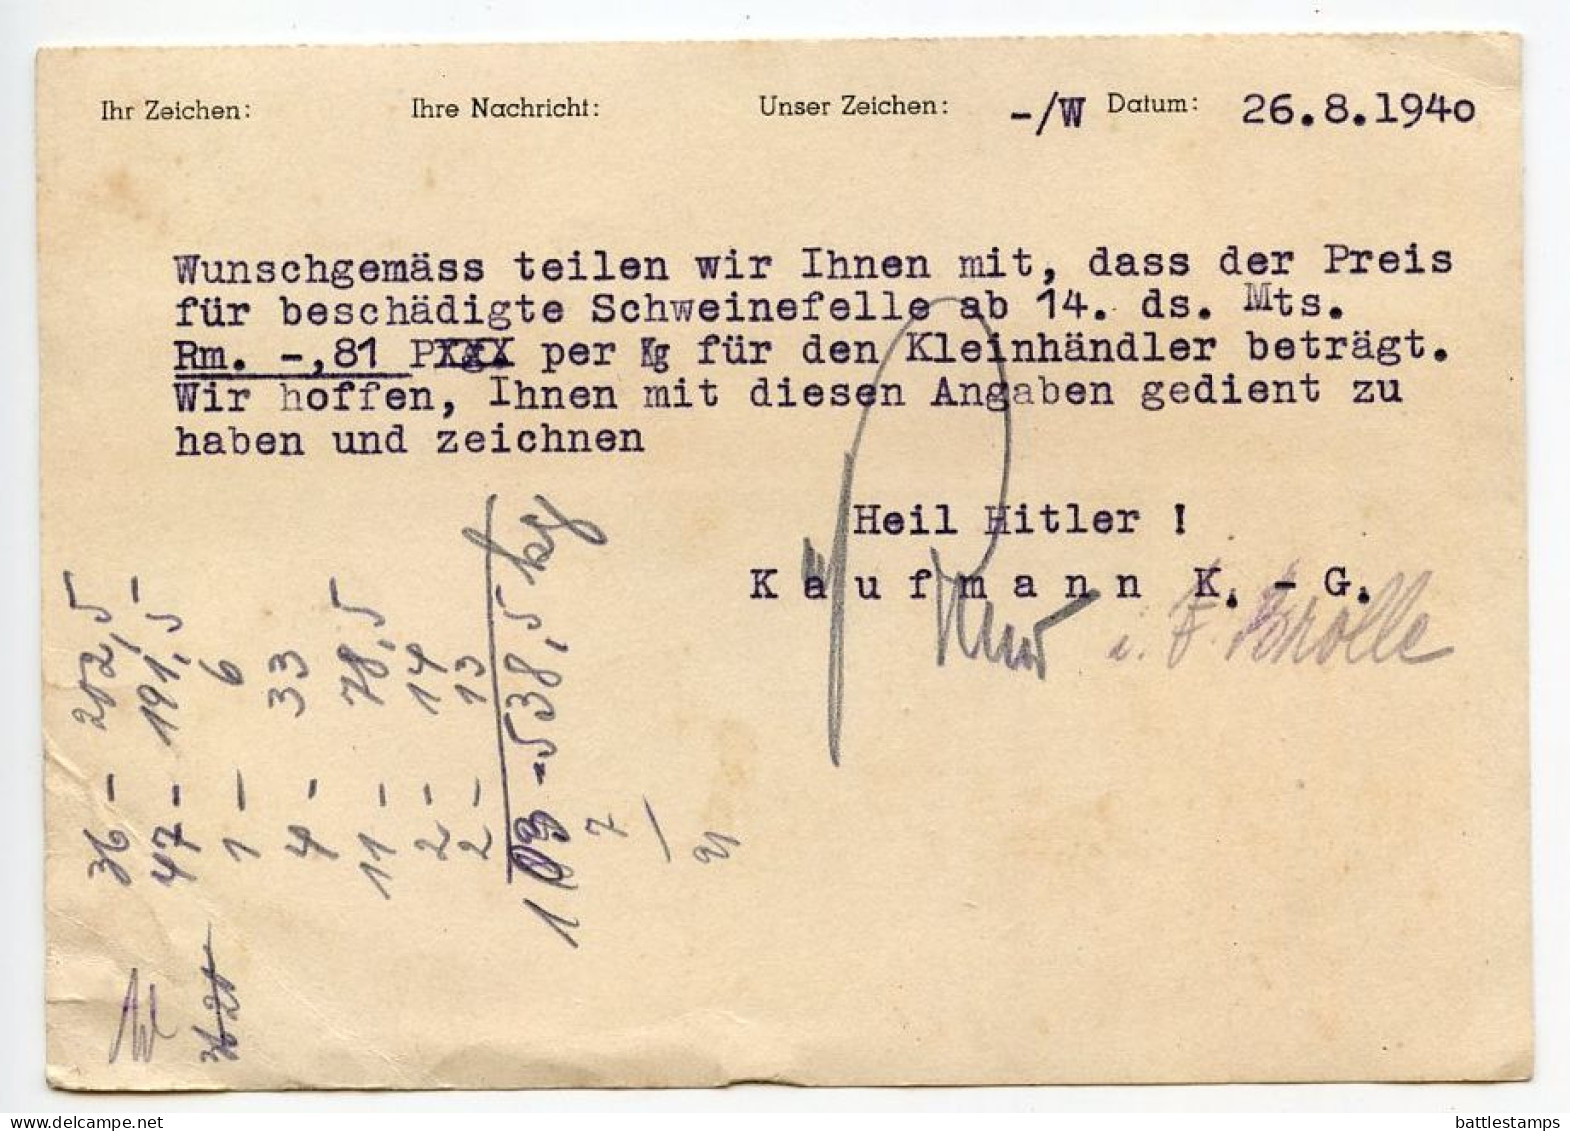 Germany 1940 Postcard; Mülheim (Ruhr) - Kaufmann K.-G. To Schiplage; 6pf. Meter With Slogan - Franking Machines (EMA)